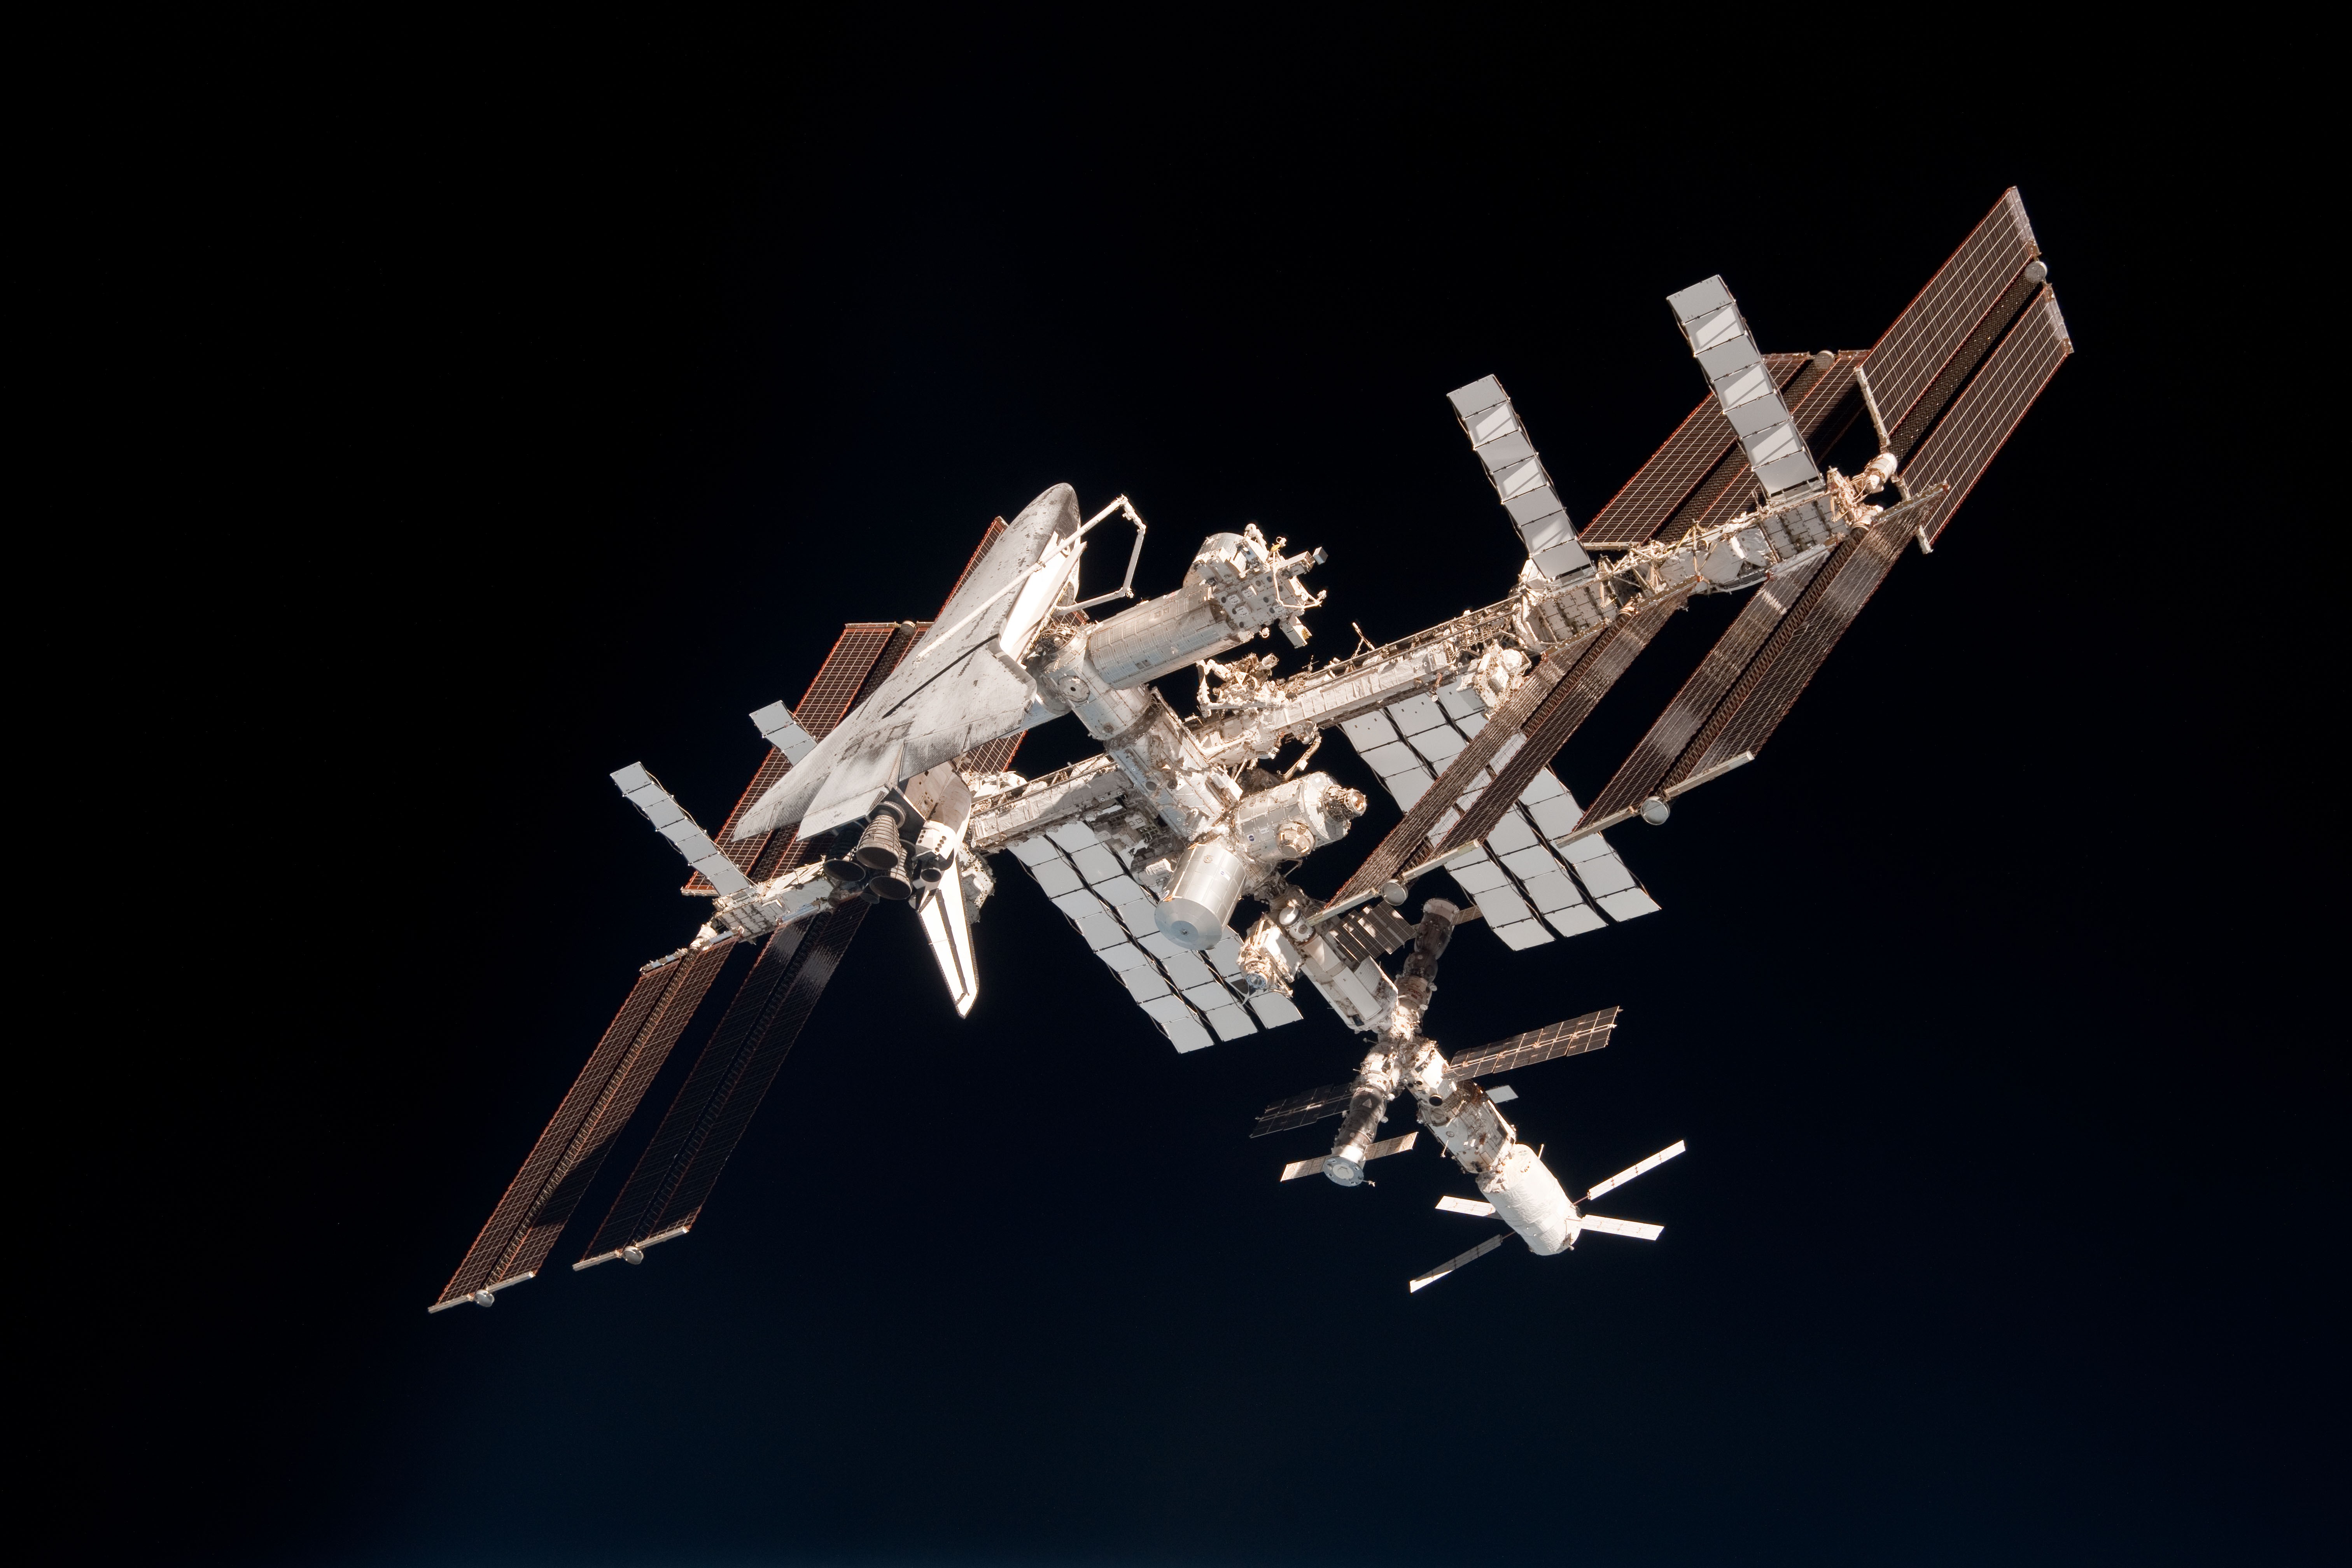 МКС, космический челнок, НАСА, космическая станция, стремиться - обои на рабочий стол